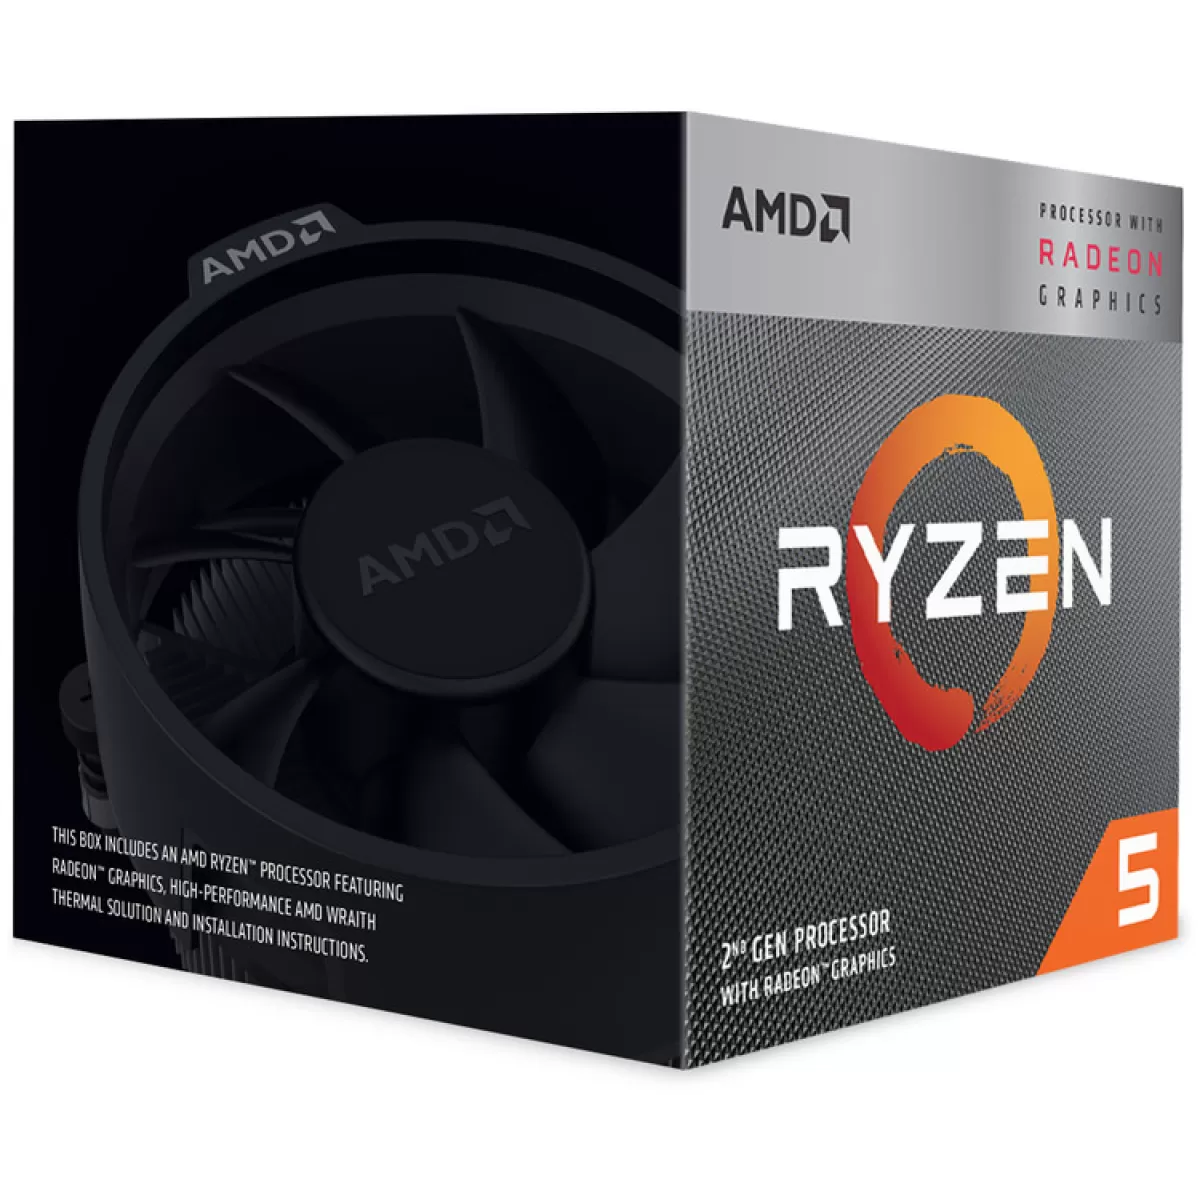 Процесор AMD RYZEN 3 3400G 3.7G /BOX